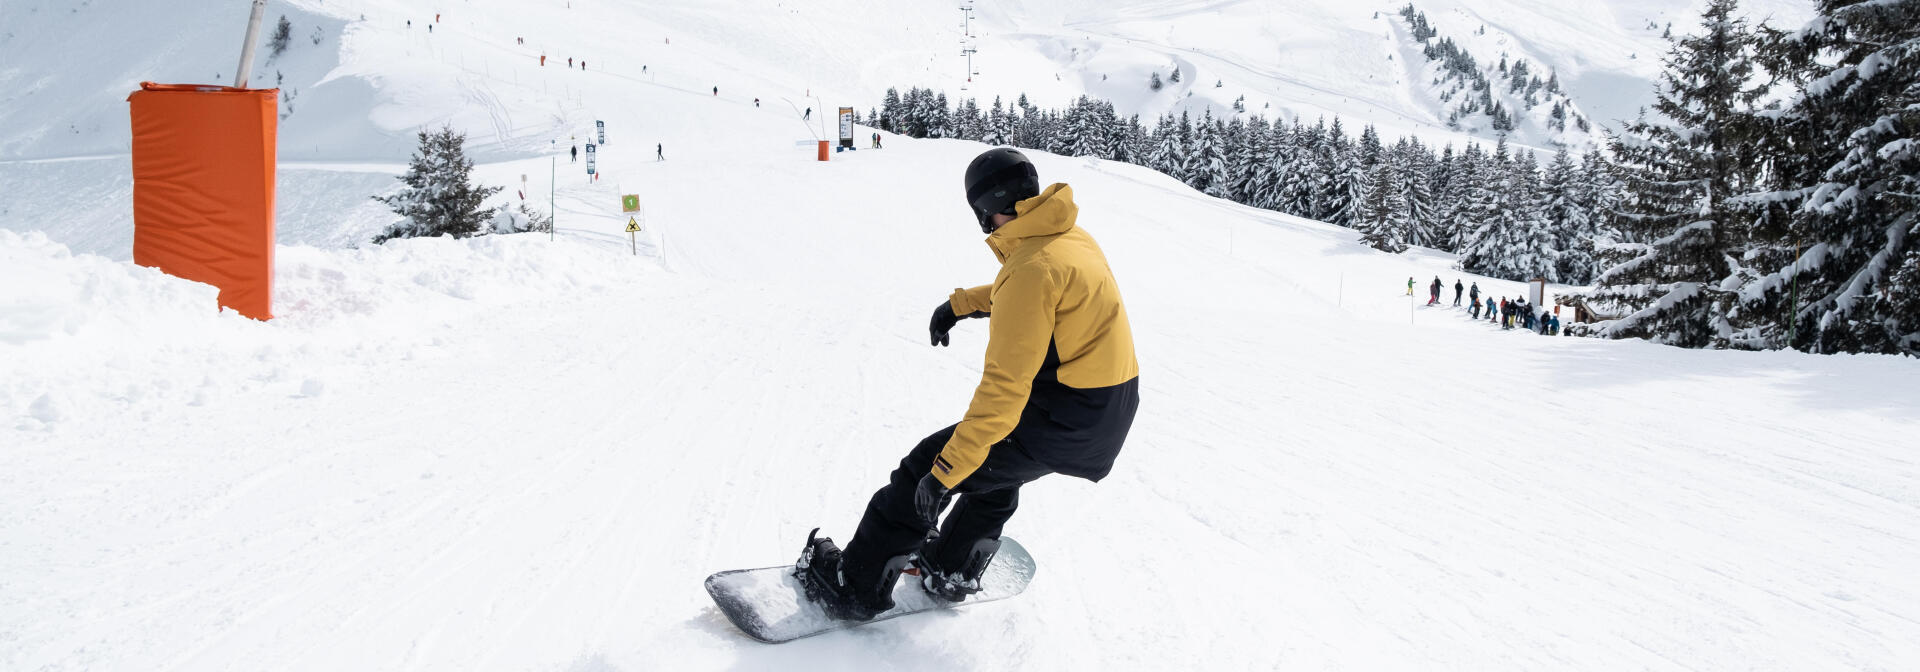 Lecții snowboard – învățarea eficientă a sportului